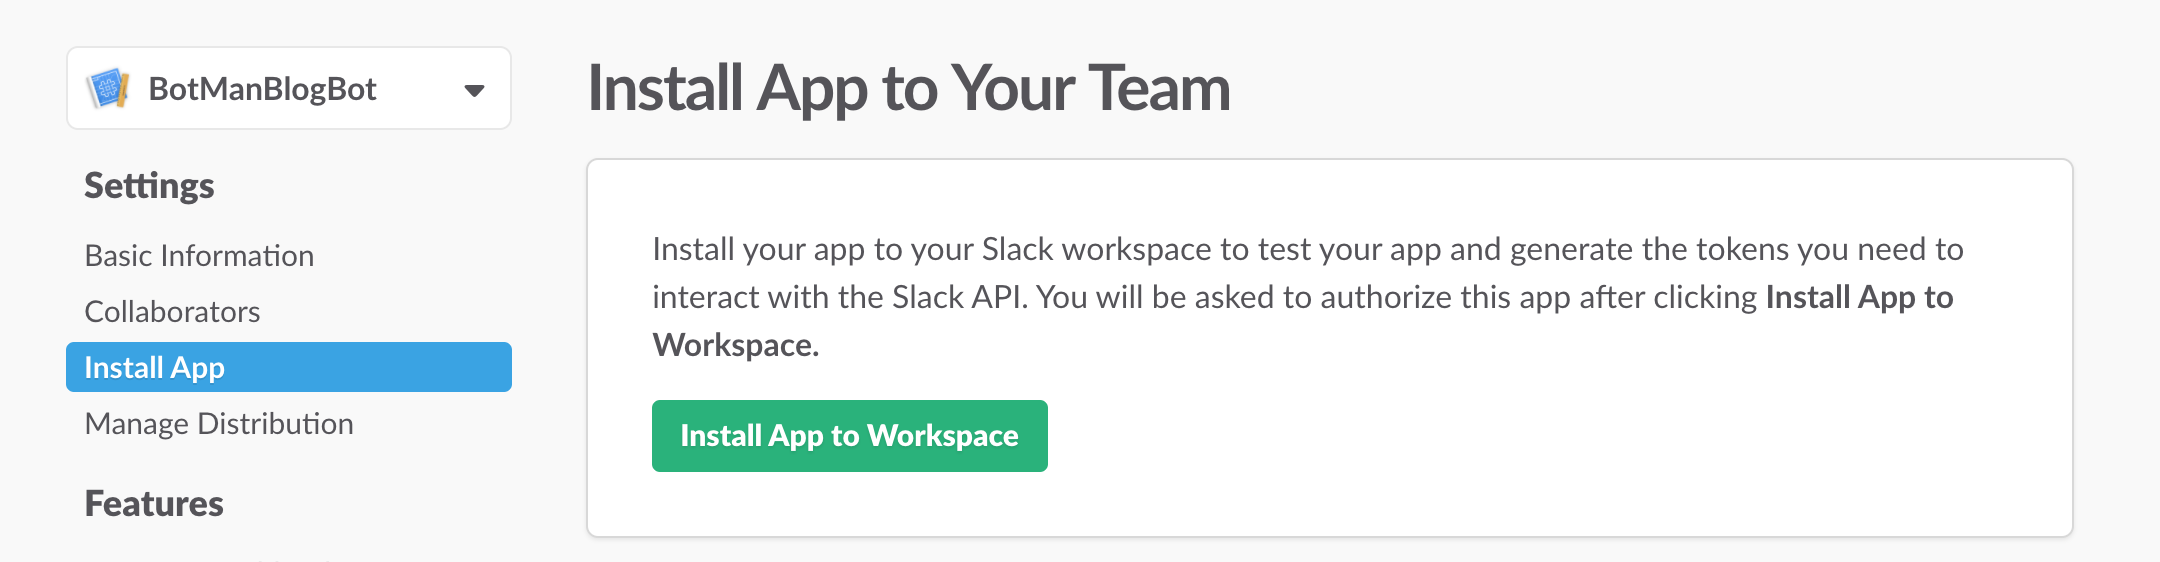 Install the Slack app